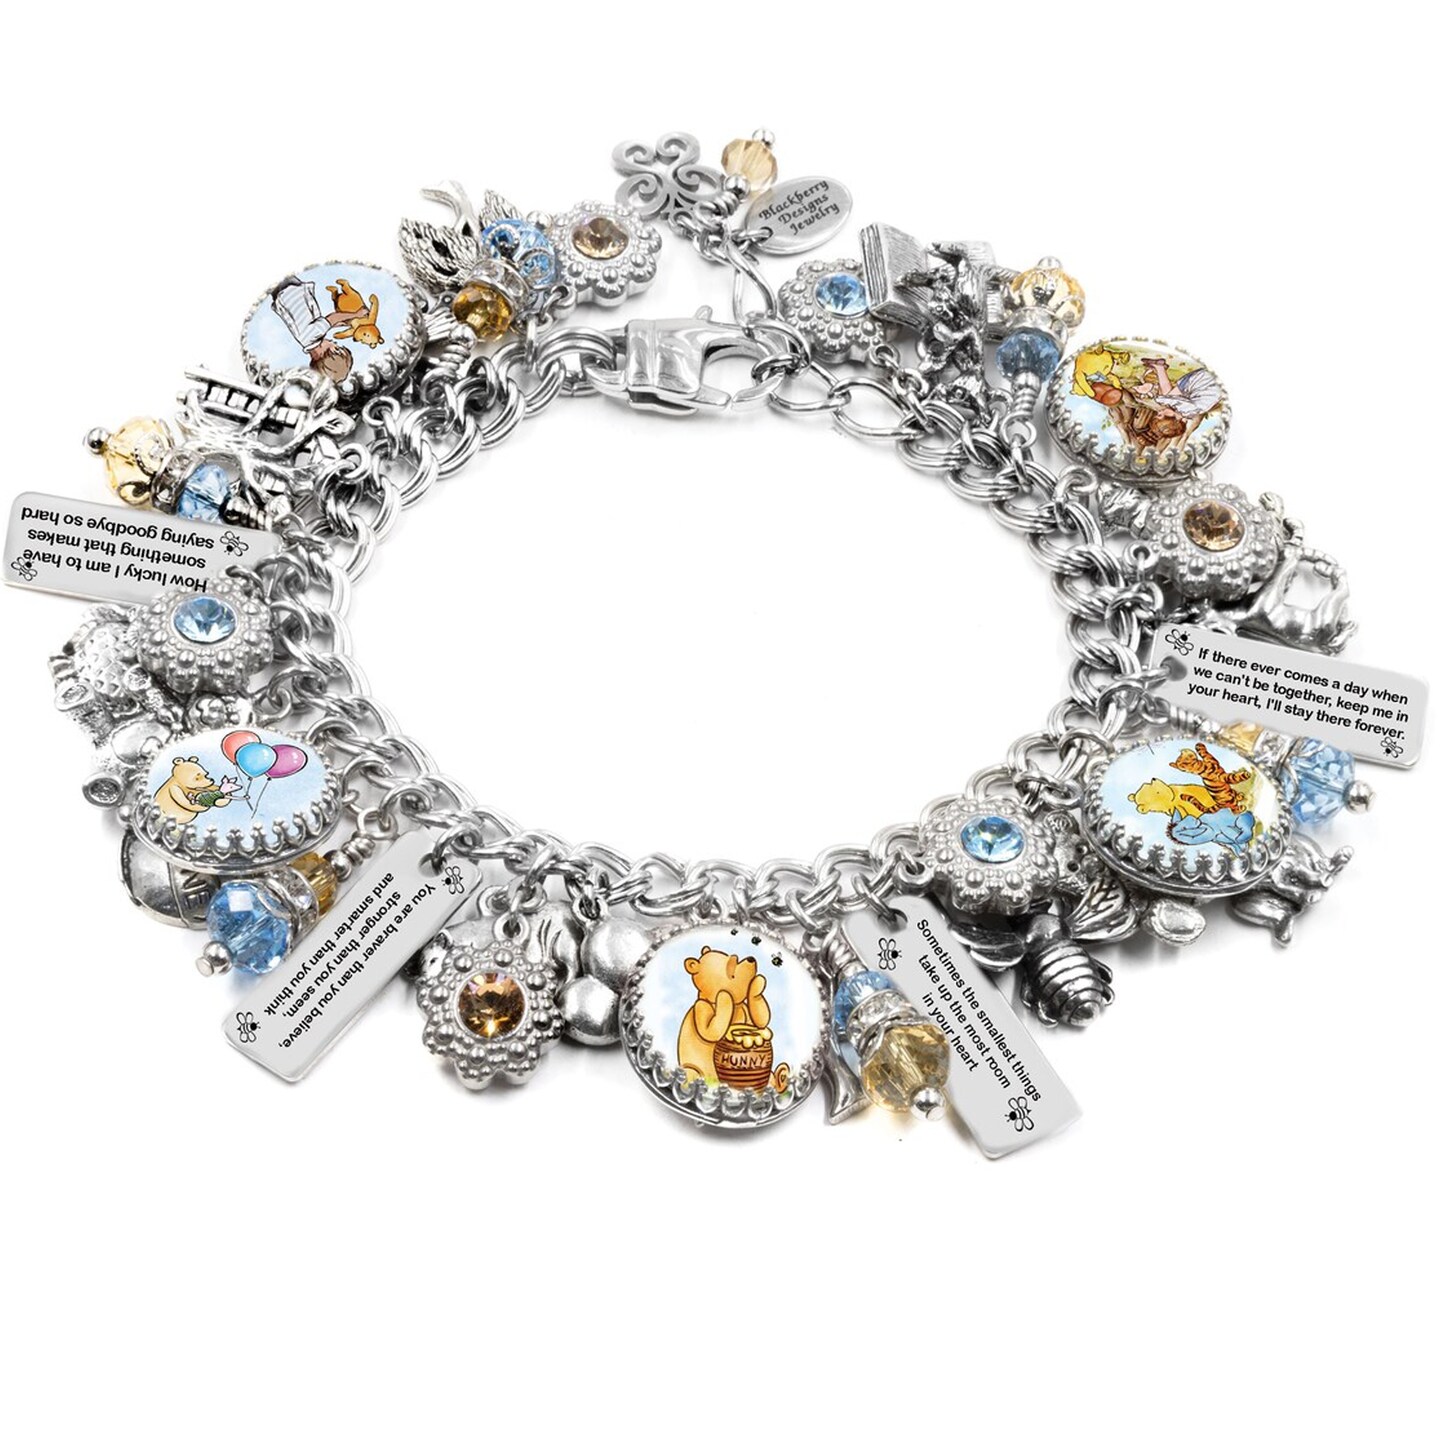 Make a Sweet Bracelet with Winnie the Pooh Pandora Charms!